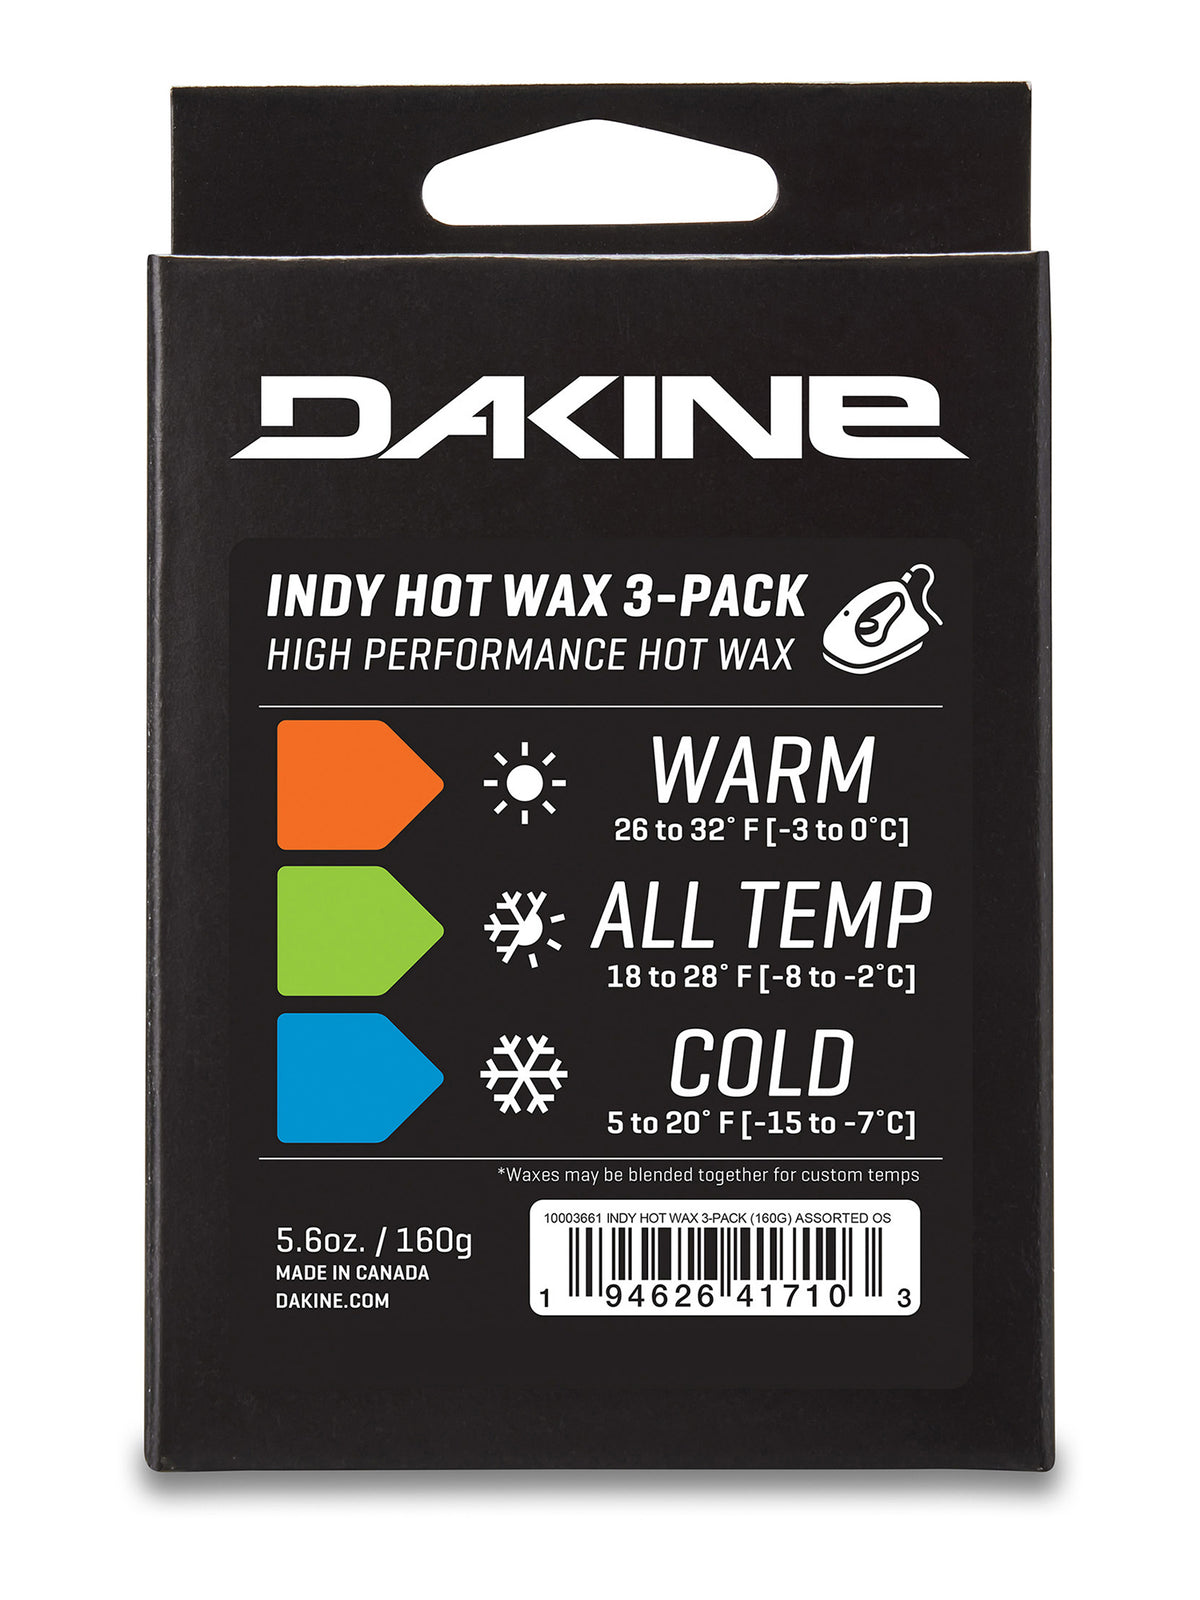 Dakine INDY HOT WAX 3-PACK 160g